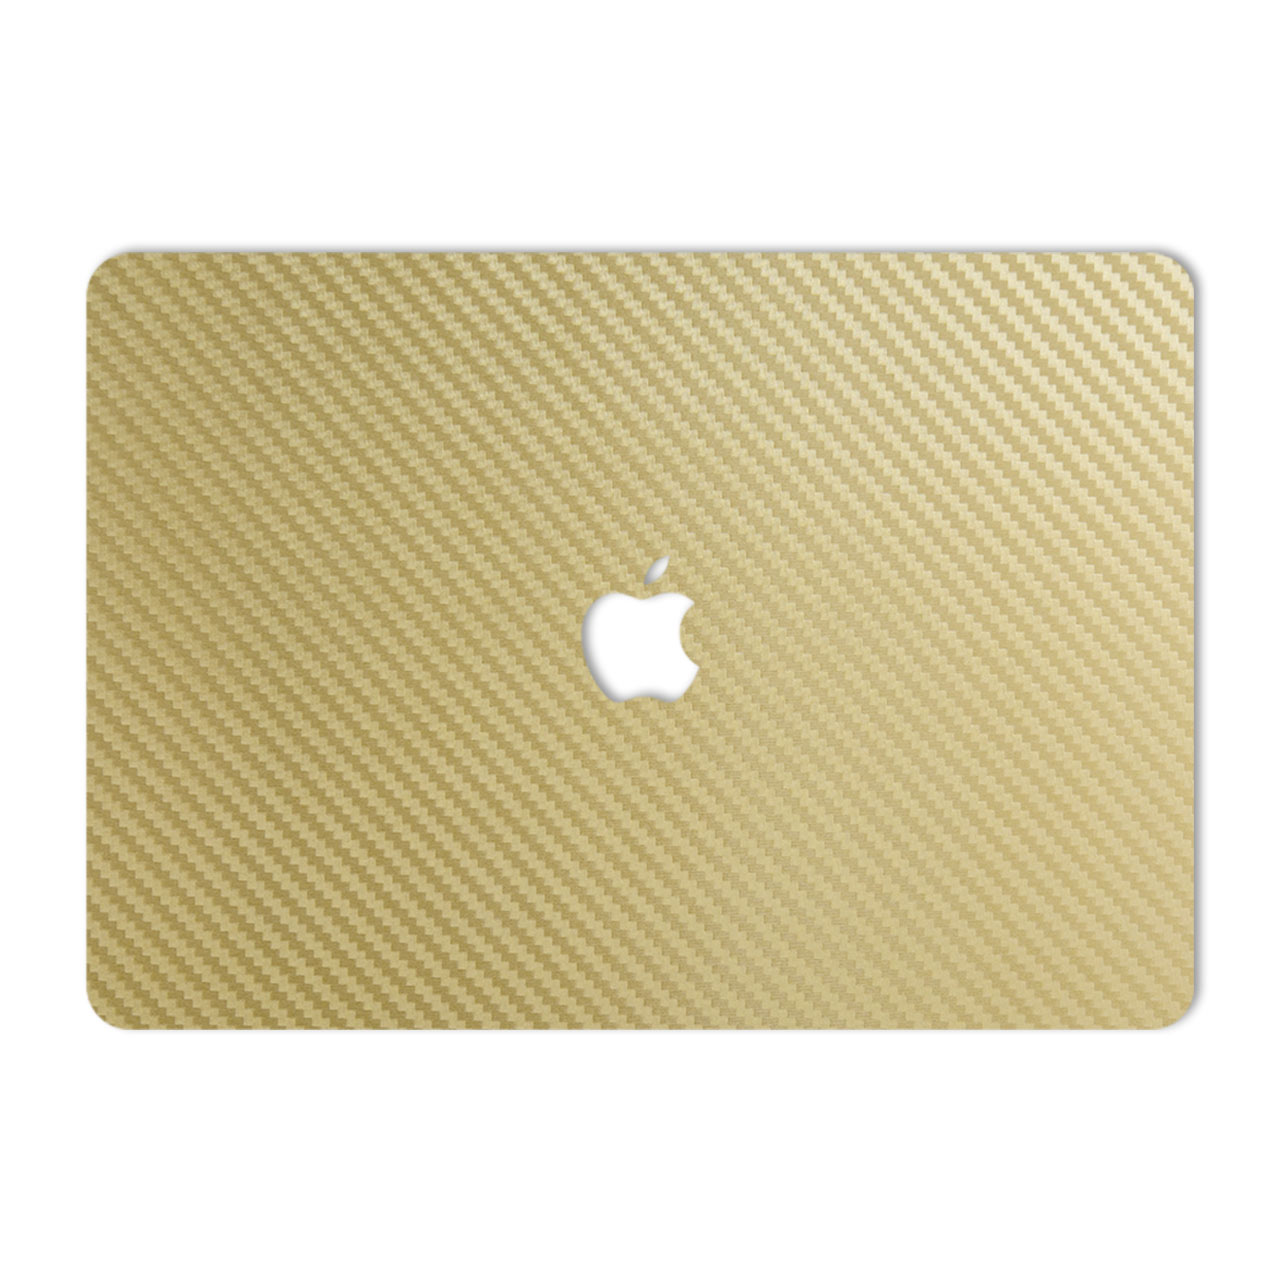 نقد و بررسی برچسب پوششی ماهوت مدل Gold Carbon مناسب برای لپ تاپ Macbook 12inch Retina توسط خریداران